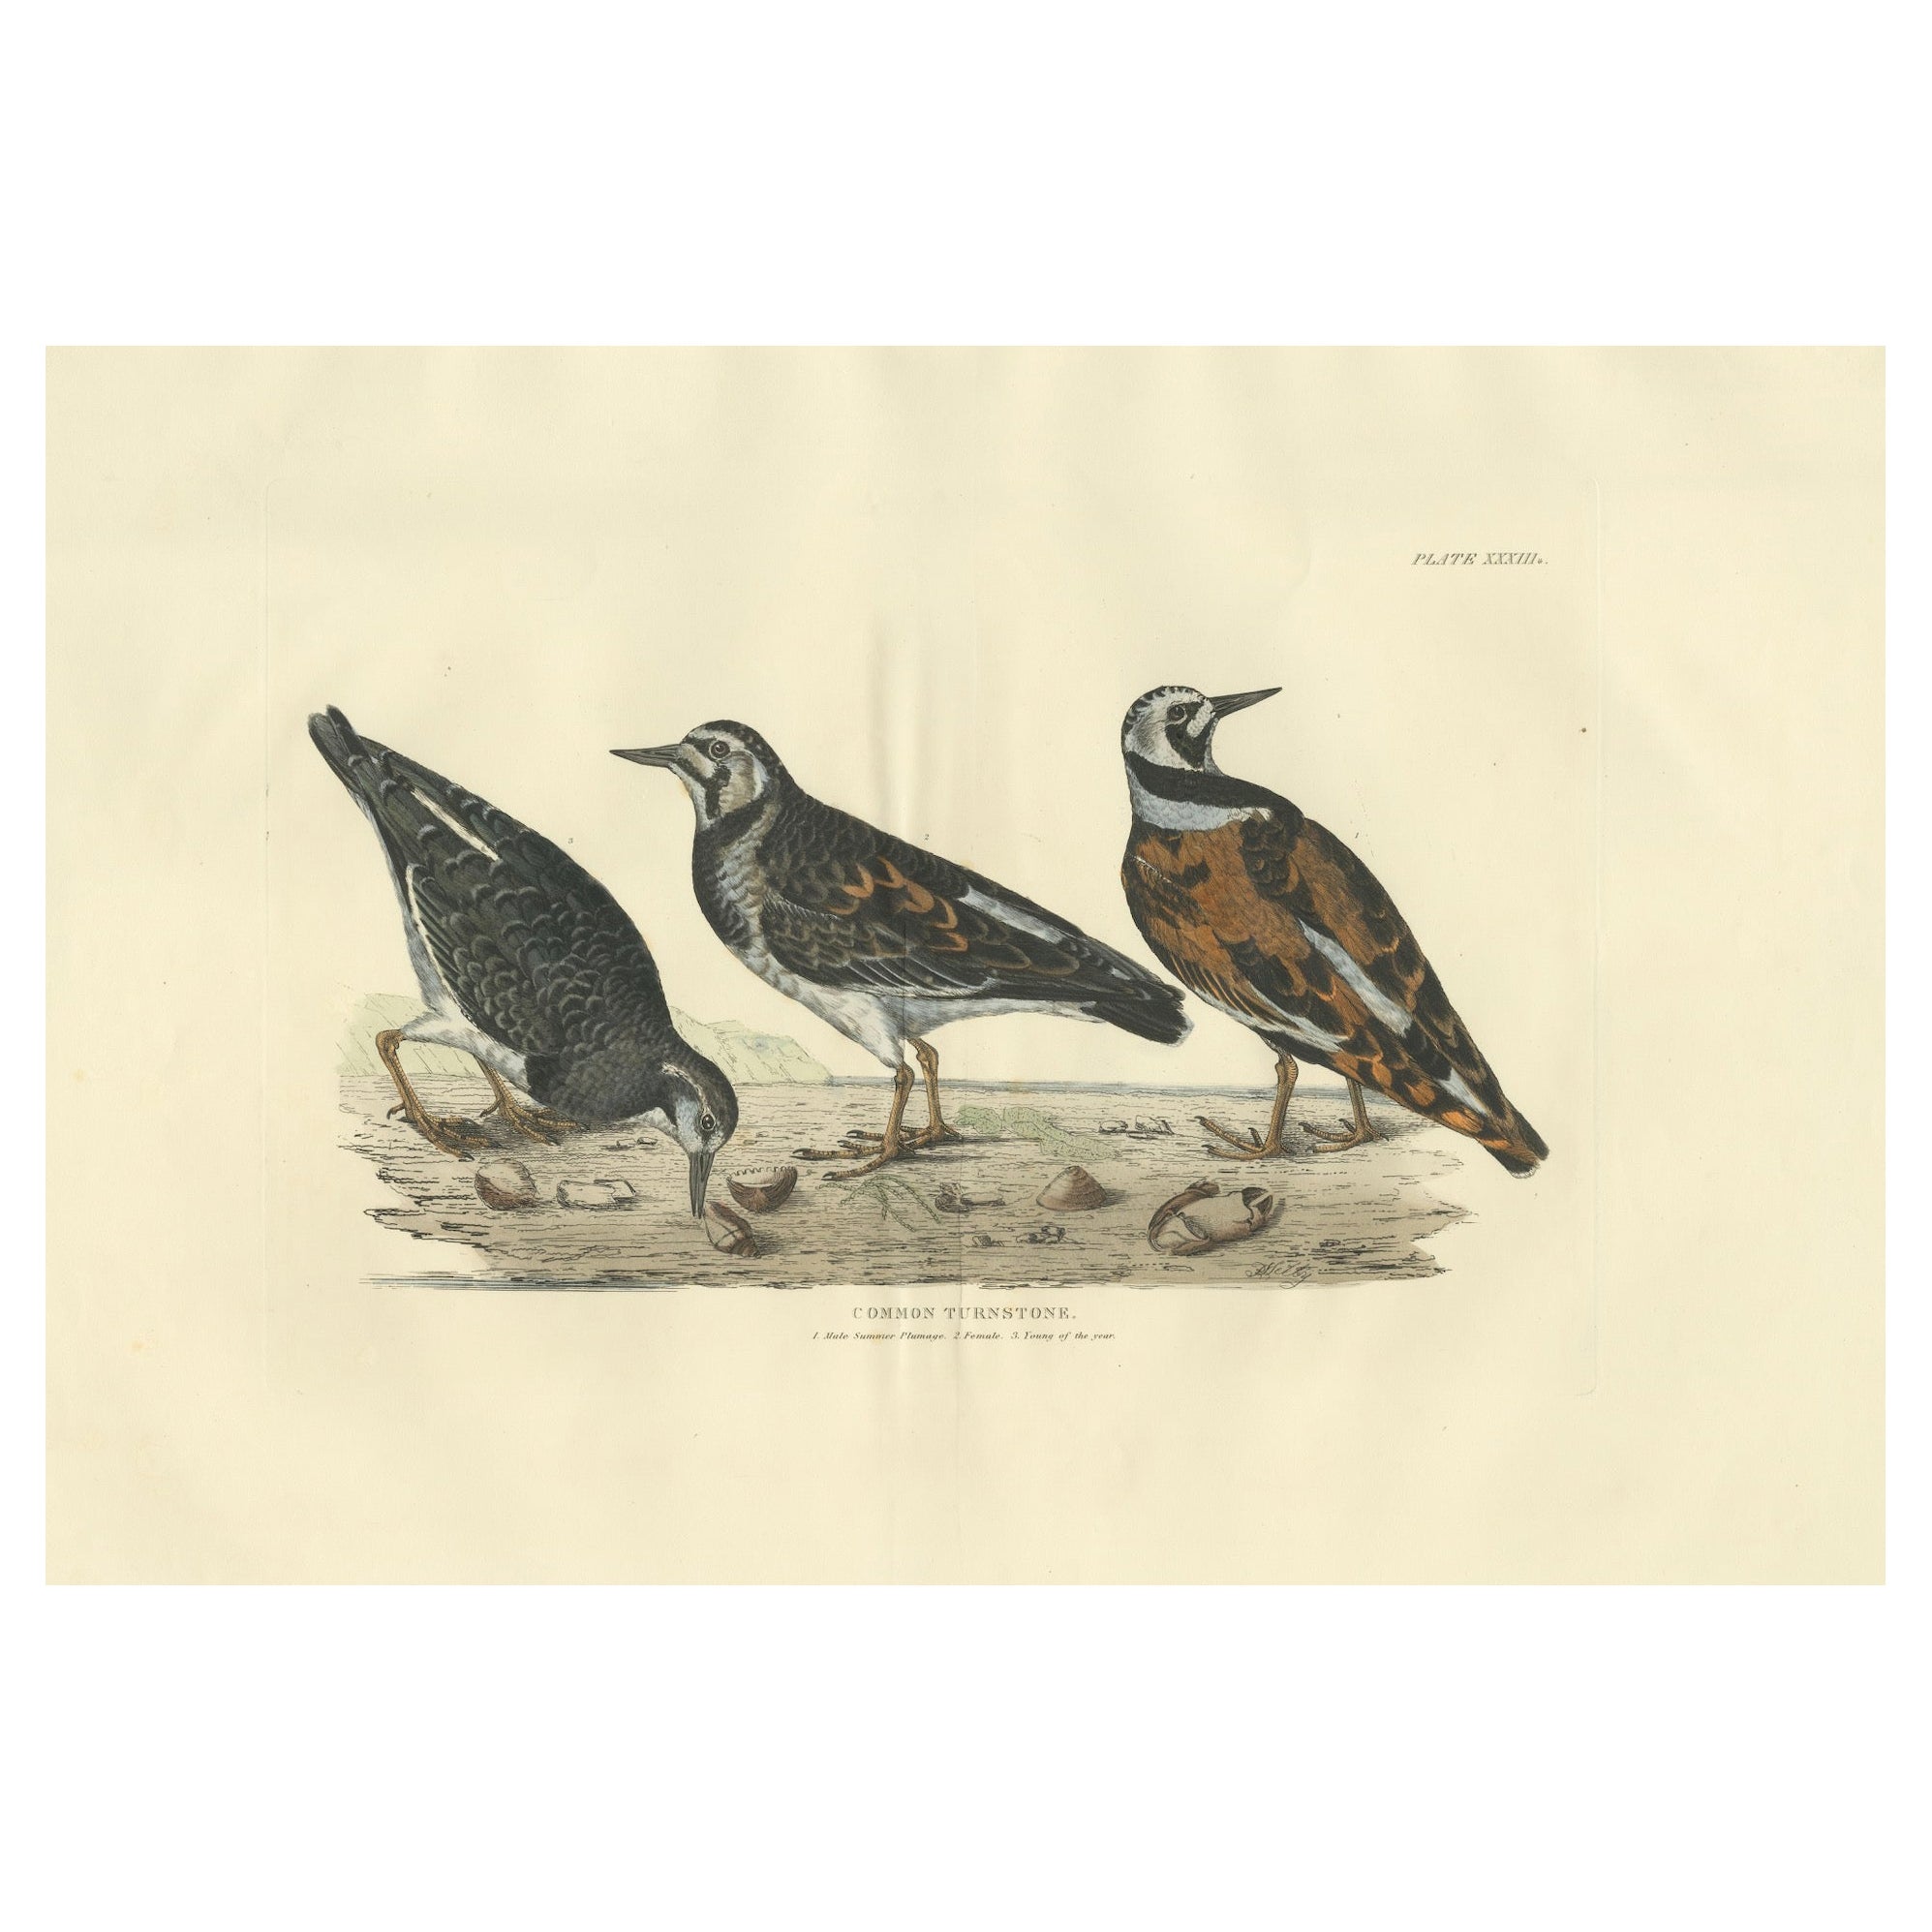 Représentation du tournant commun : variations saisonnières et sexuelles du plumage, 1826